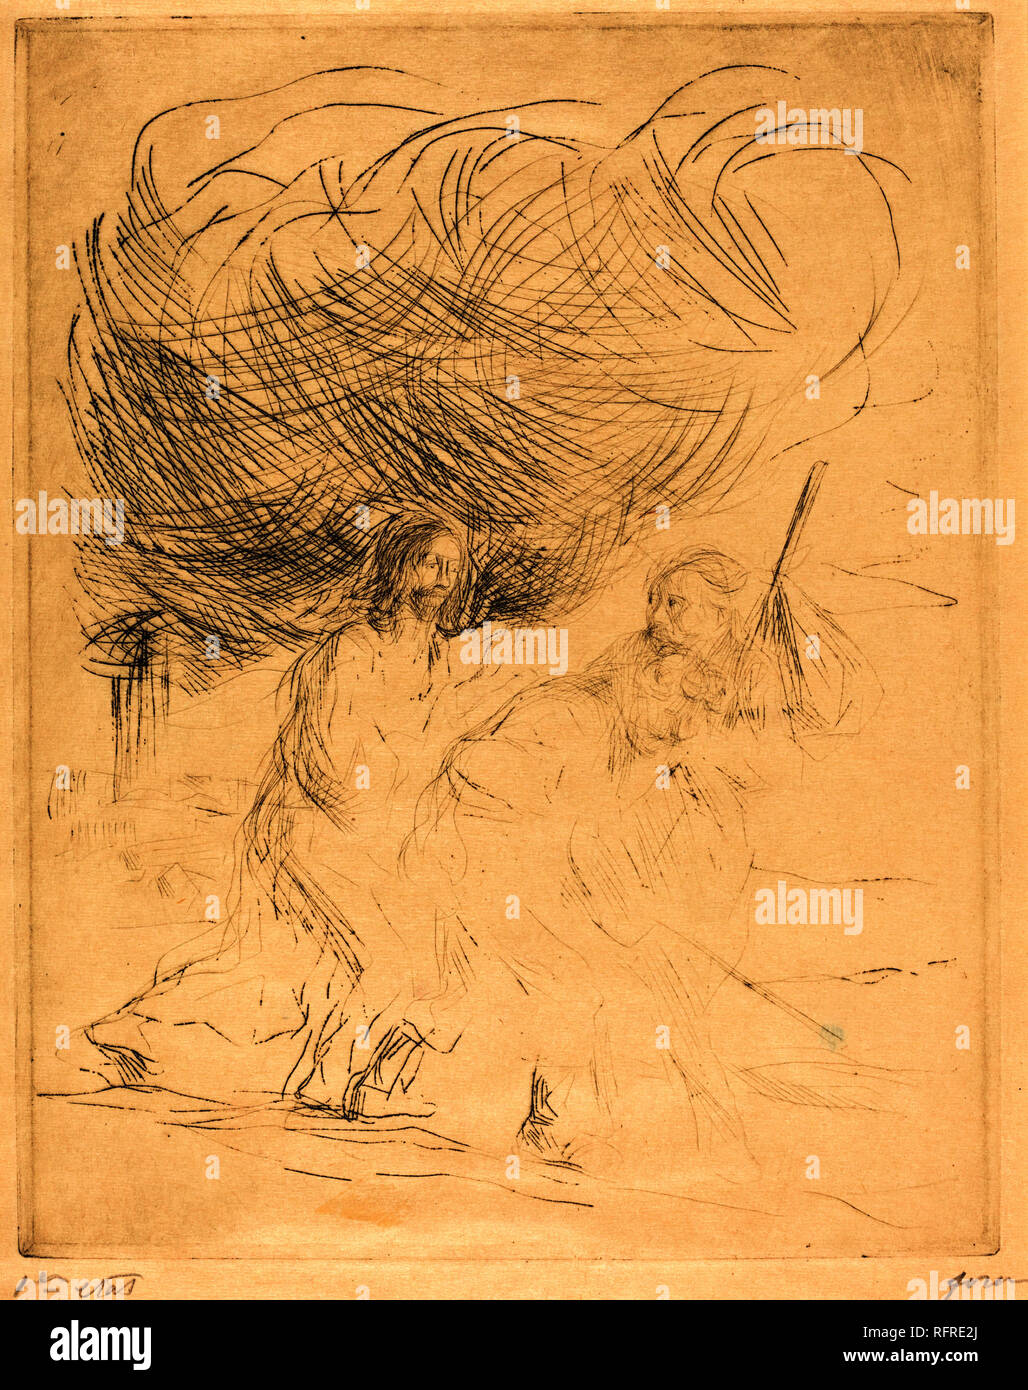 Le chemin d'Emmaüs (deuxième plat). En date du : 1902/1907. Technique : gravure. Musée : National Gallery of Art, Washington DC. Auteur : forain, JEAN LOUIS. Banque D'Images